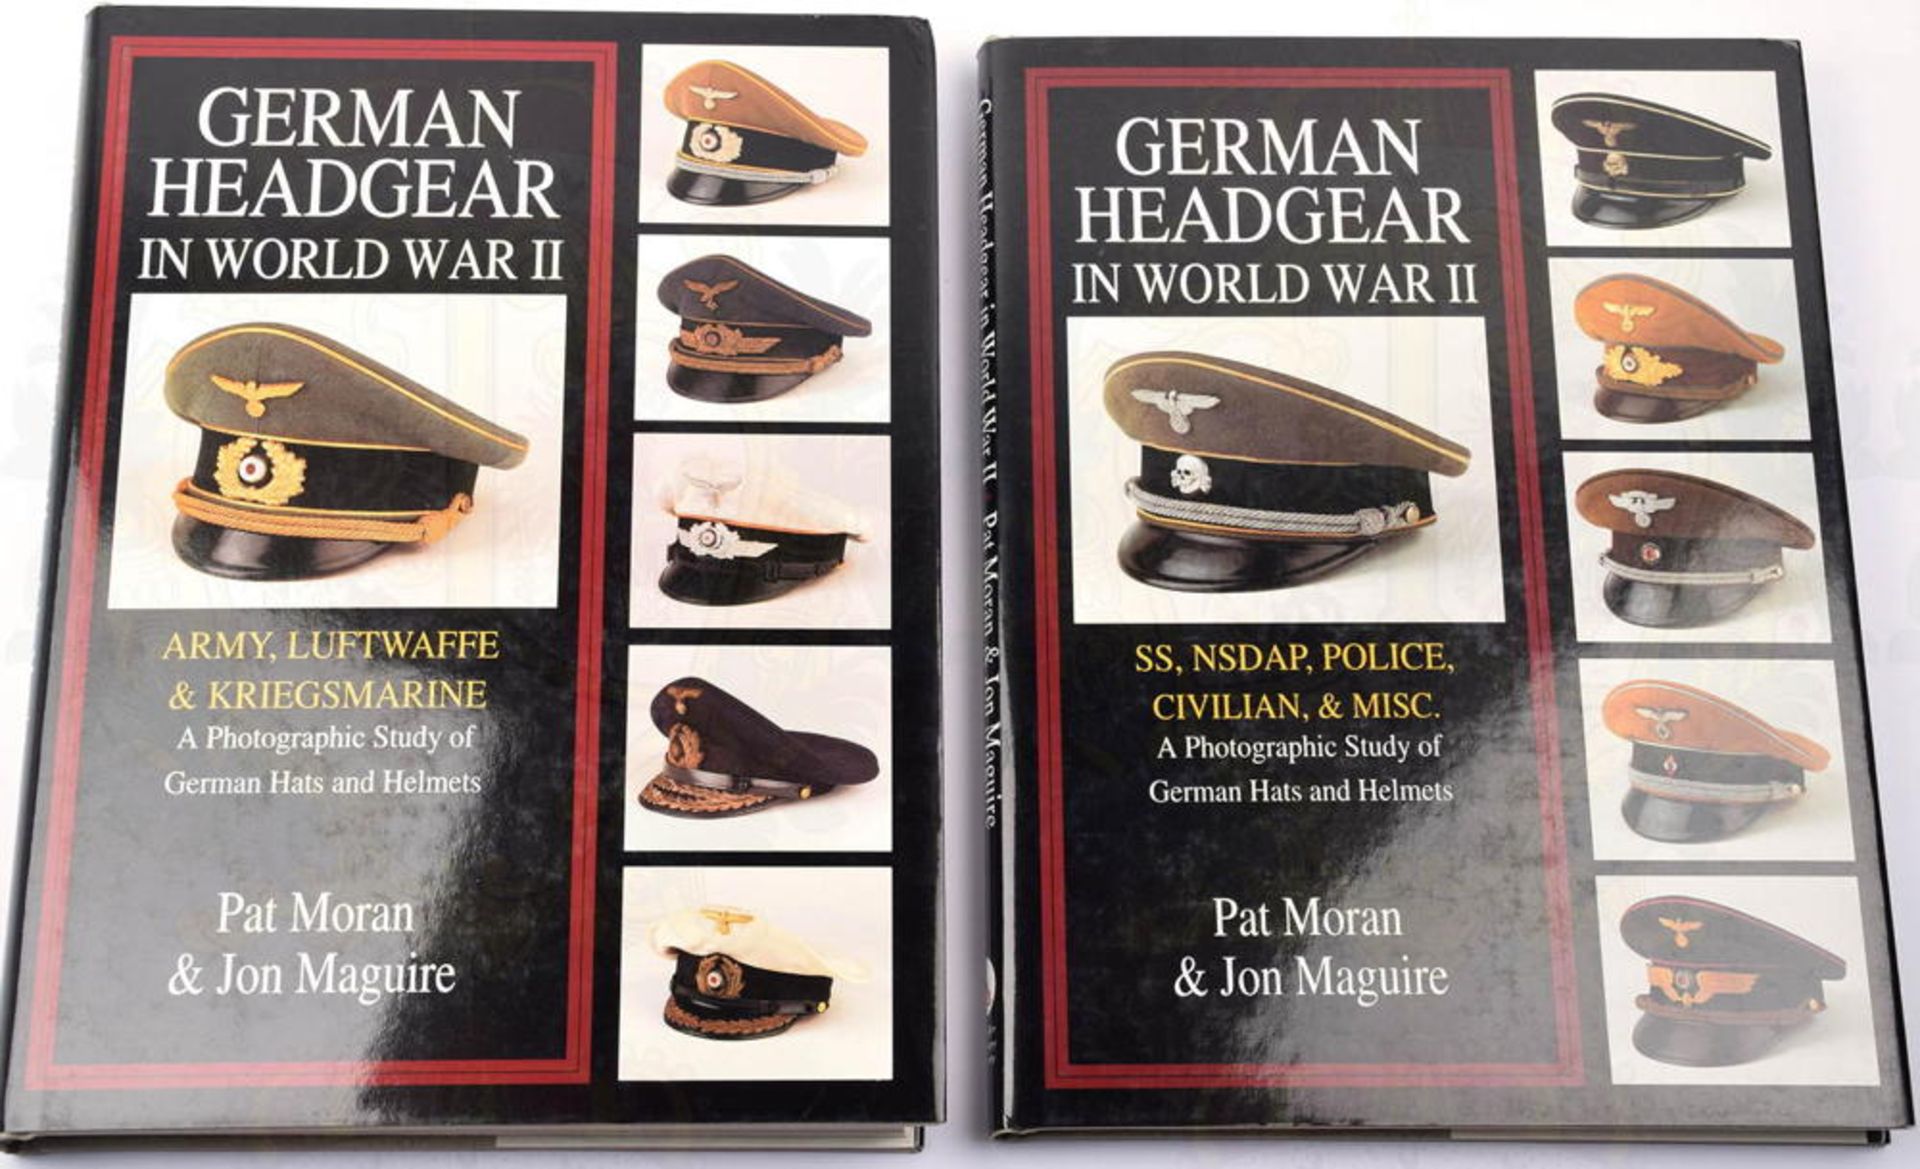 GERMAN HEADGEAR IN WORLD WAR II, 2 Bände, P. Moran u. J. Maguire, Atglen 1997, englischer Text,